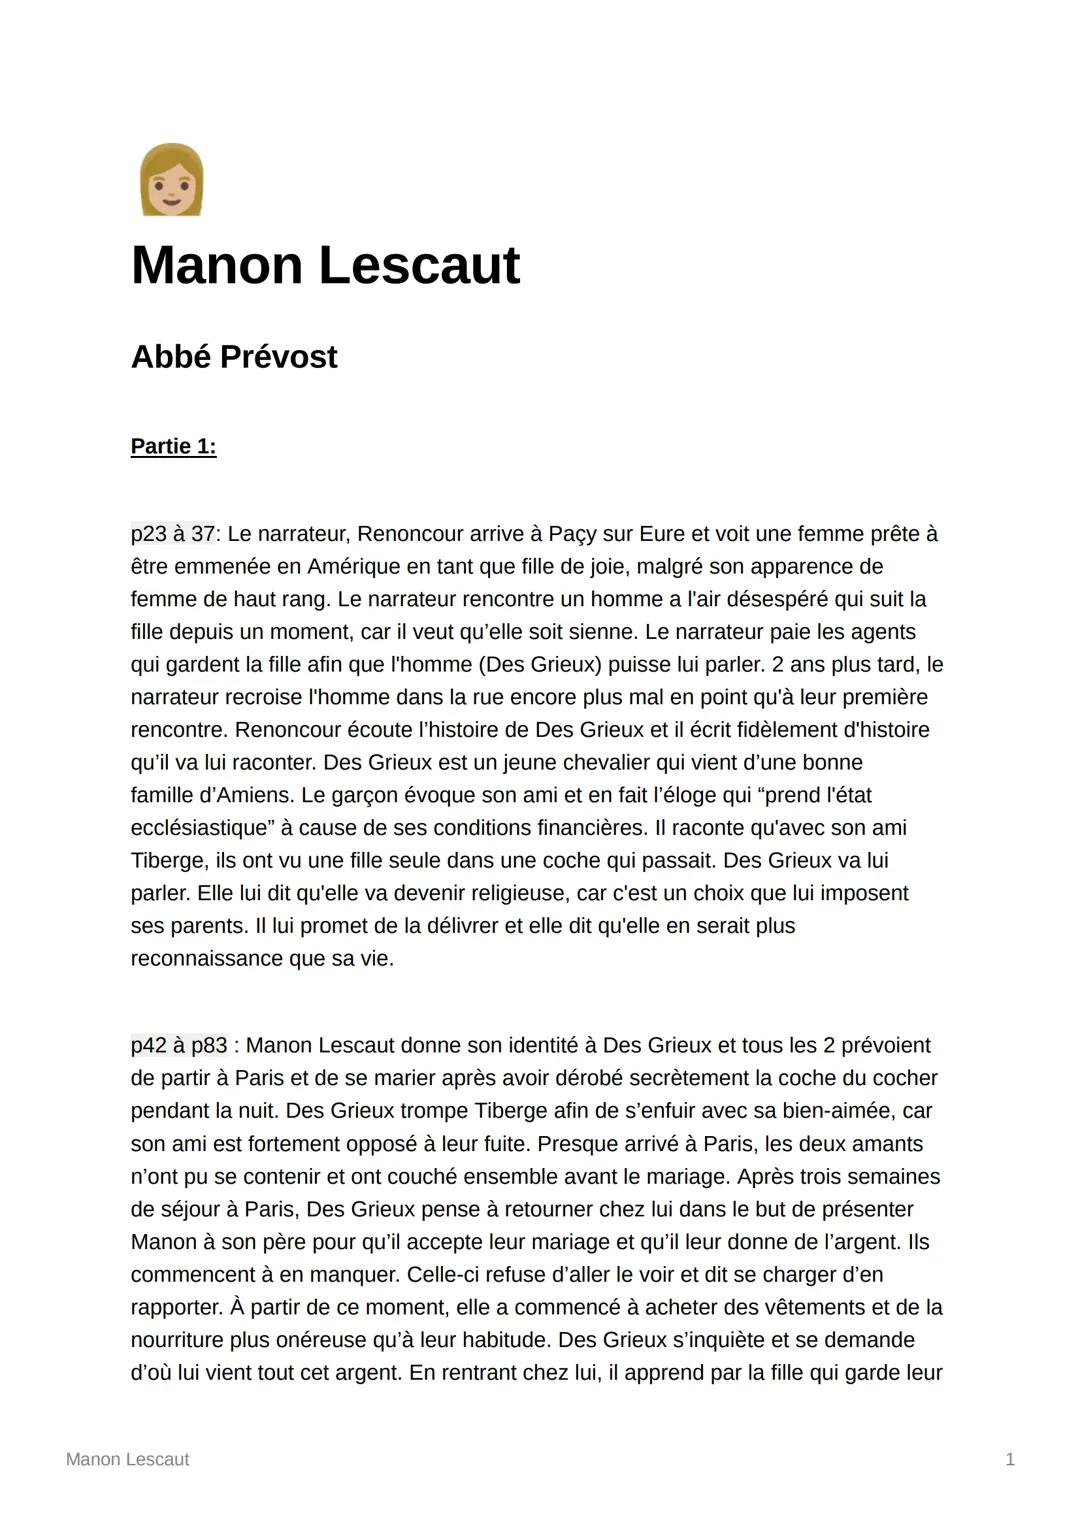 Manon Lescaut
Abbé Prévost
Partie 1:
p23 à 37: Le narrateur, Renoncour arrive à Paçy sur Eure et voit une femme prête à
être emmenée en Amér